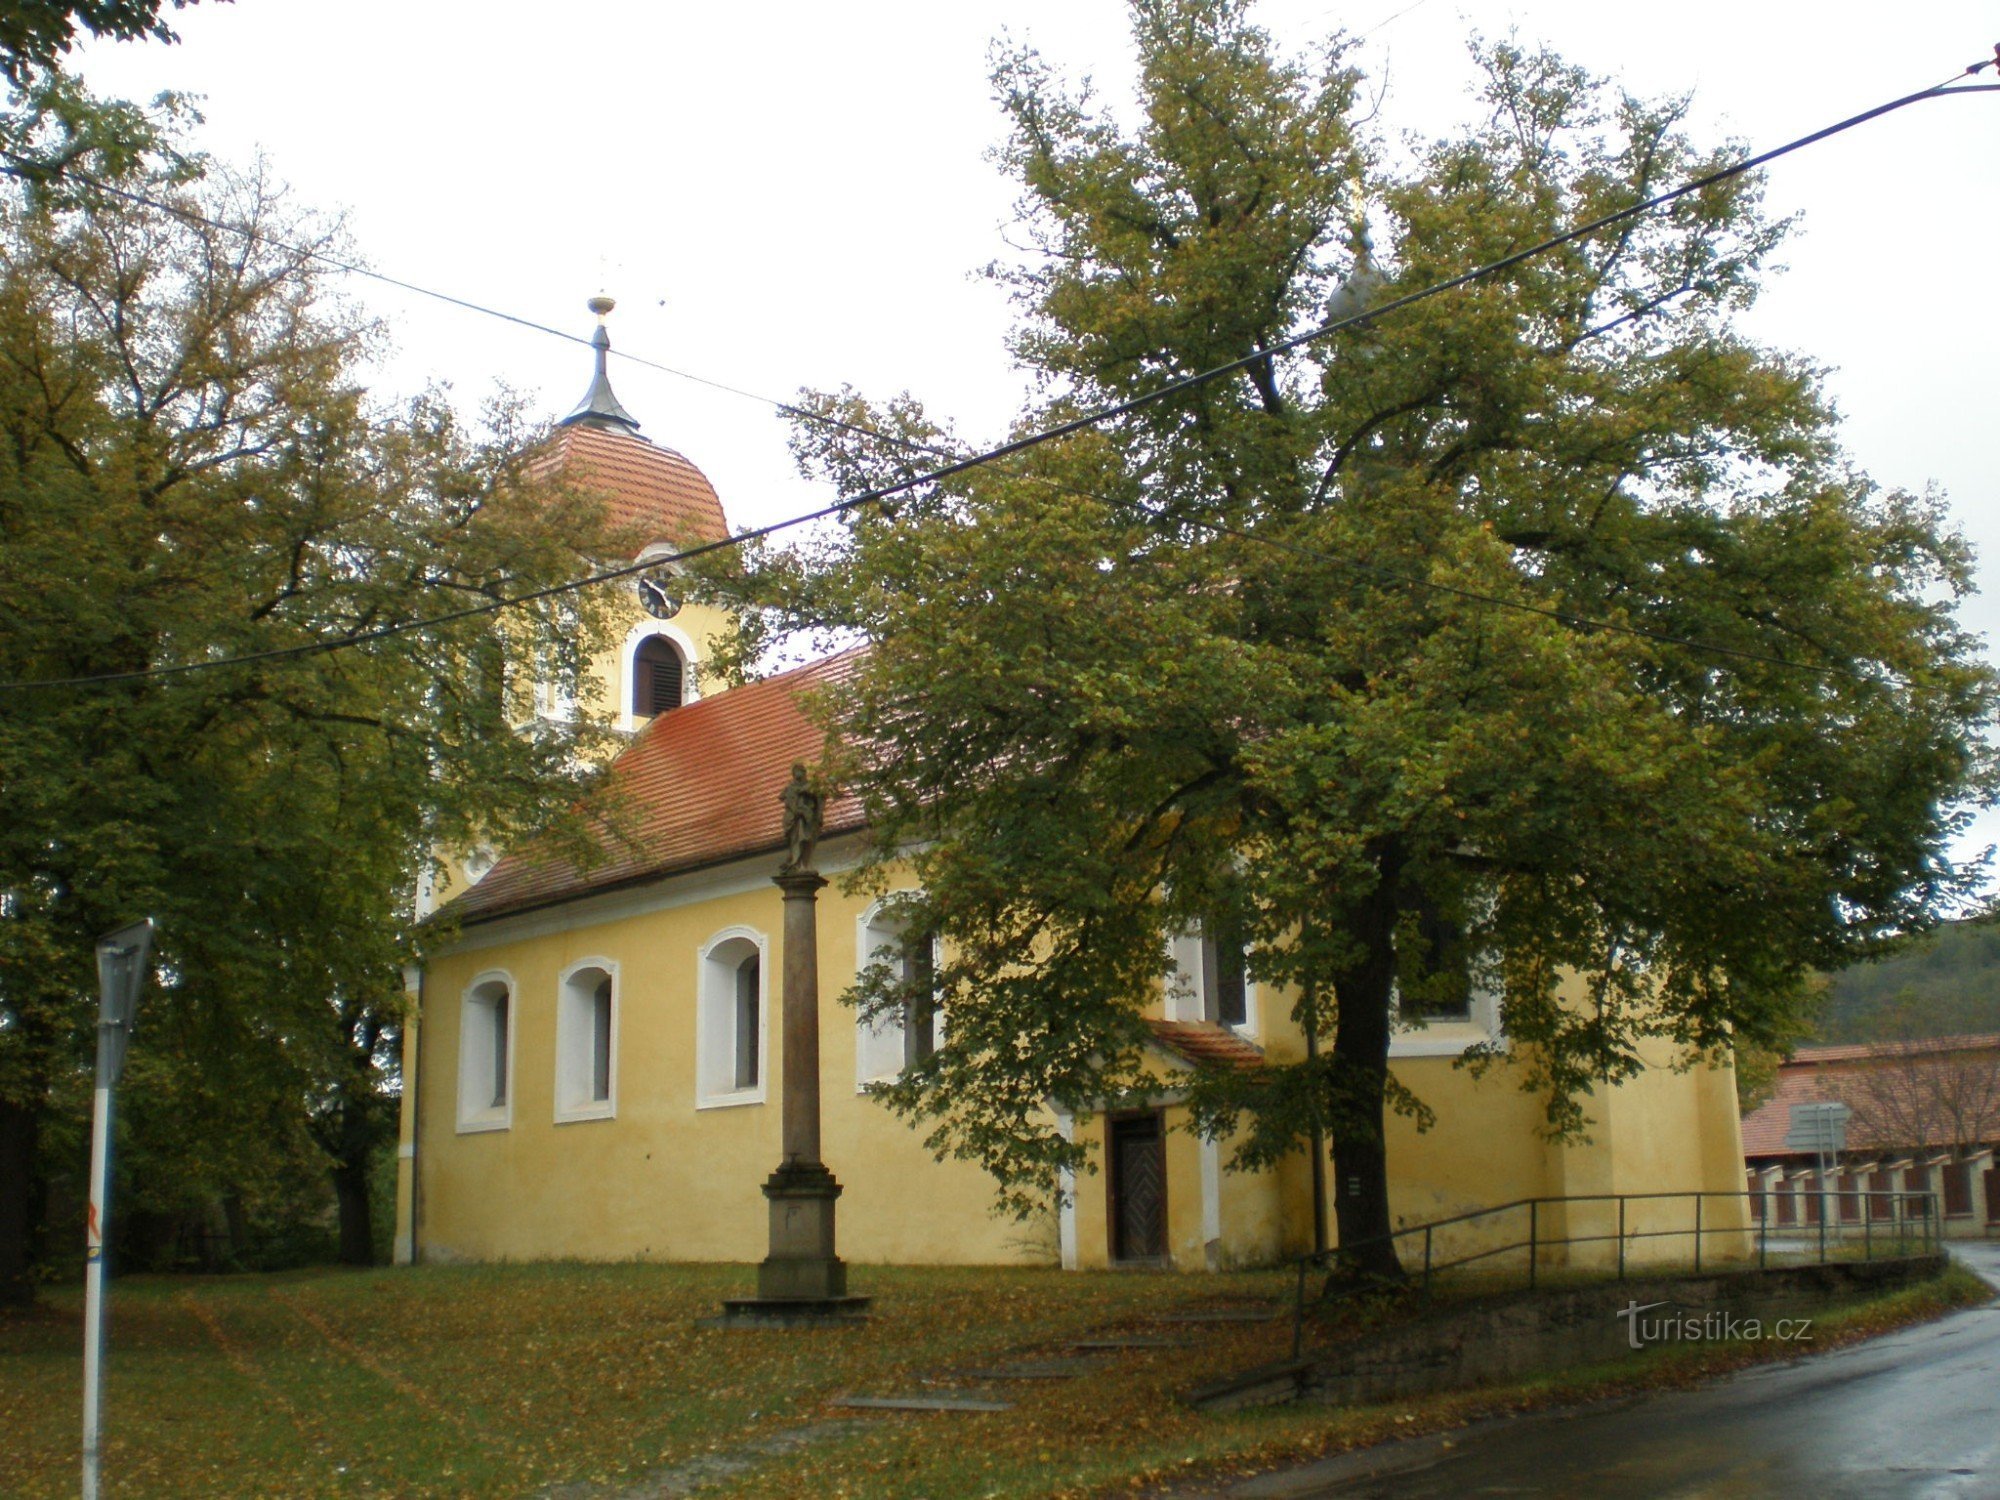 Lochovice - crkva sv. Andrija